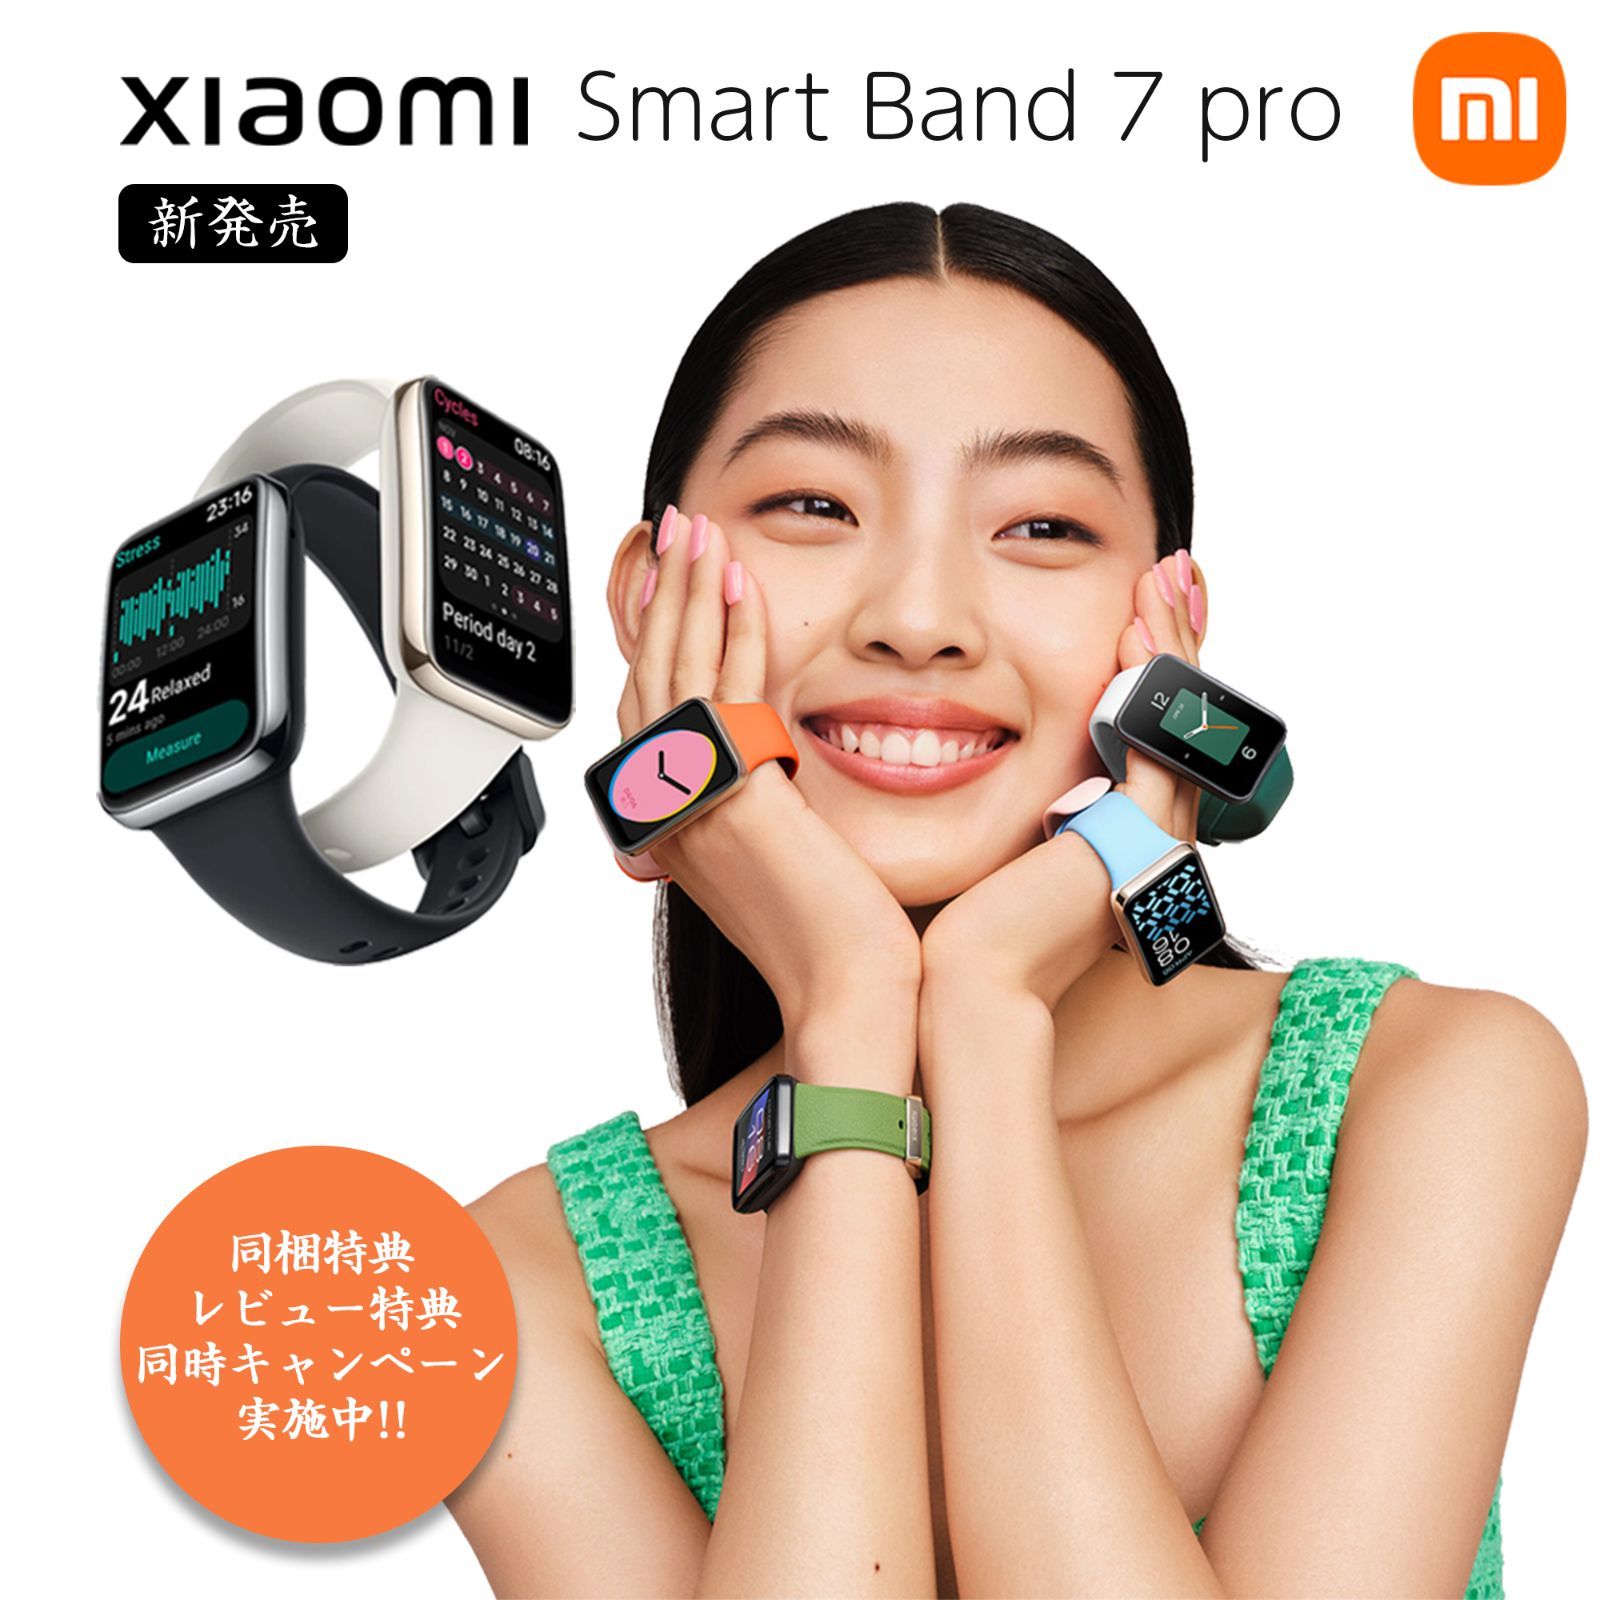 【フォロー割 | 特典付】 Xiaomi Smart Band 7 Pro スマートウォッチ 本体日本語表示 1.64インチ大画面 GPS内蔵  110種類スポーツモード 150種類文字盤 アプリ 磁気充電 血中酸素レベル シャオミ グローバル版